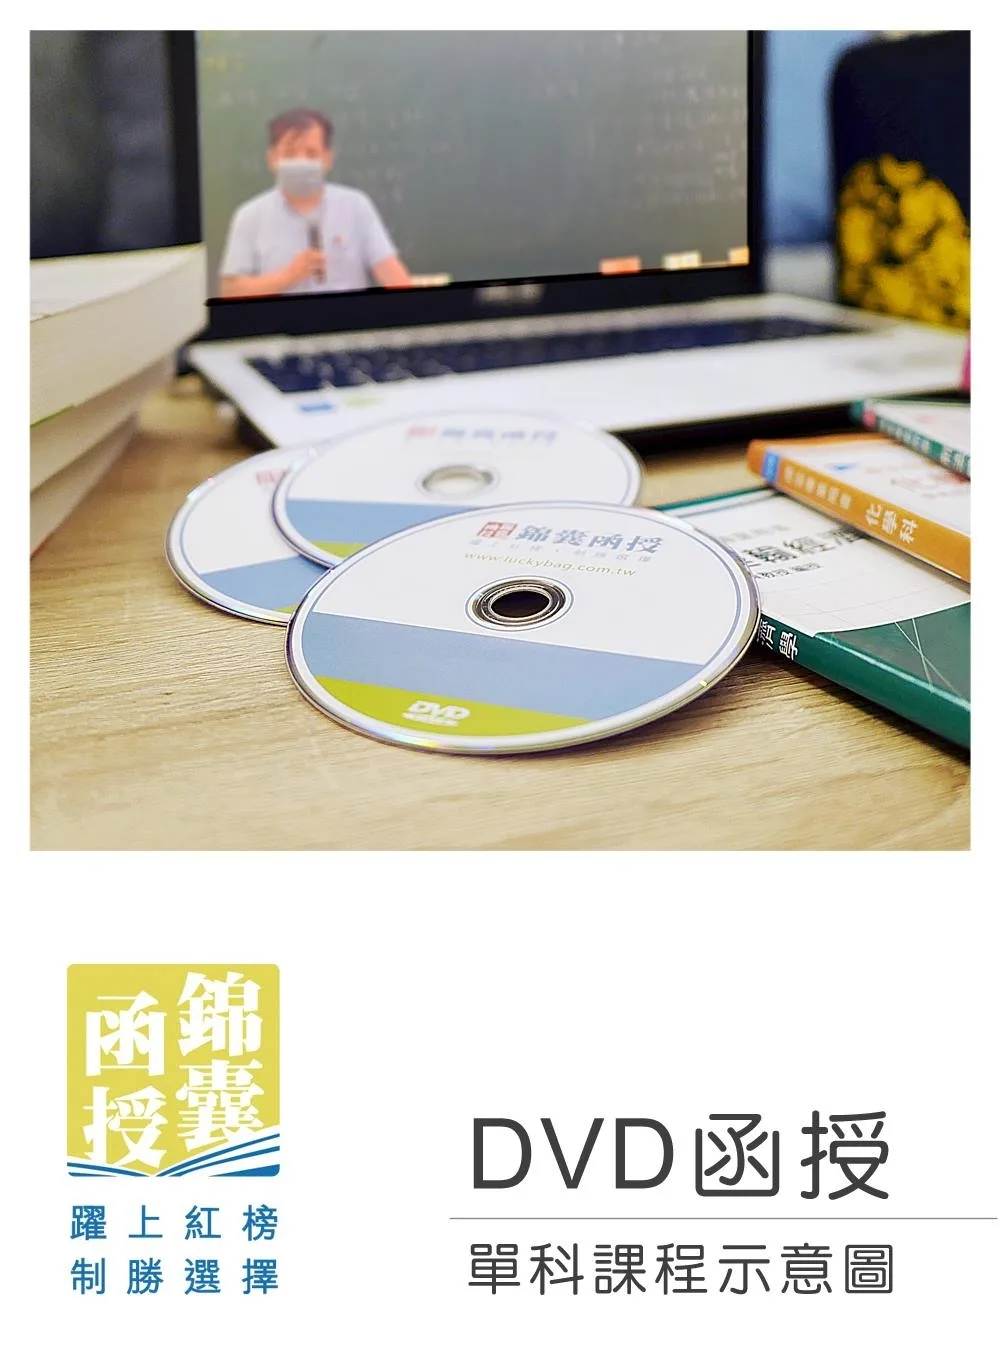 【DVD函授】地方自治-單科課程(111版)